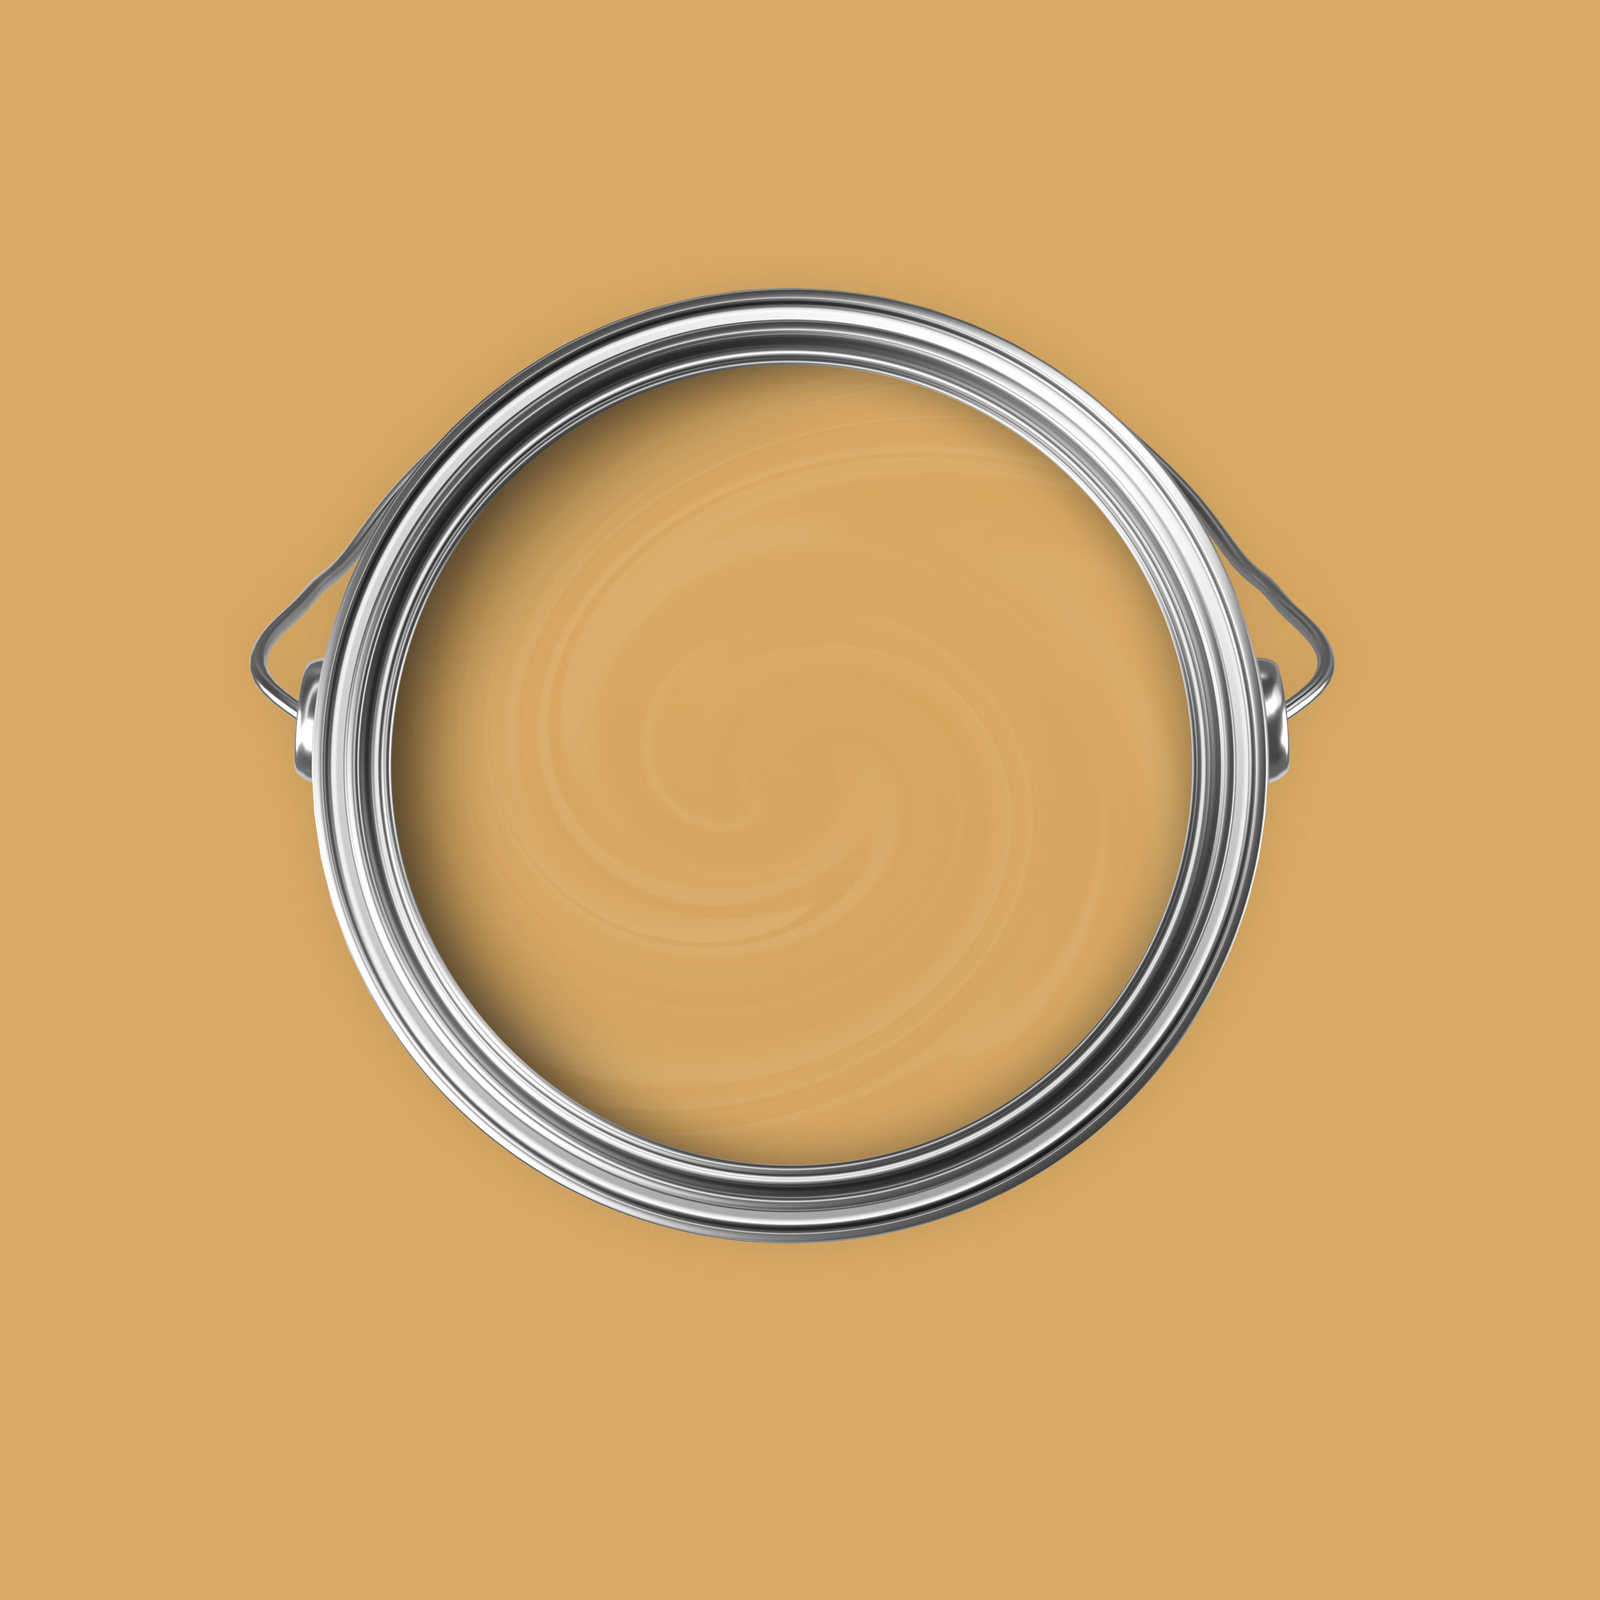             Premium Muurverf verfrissend mosterdgeel »Beige Orange/Sassy Saffron« NW812 – 5 liter
        